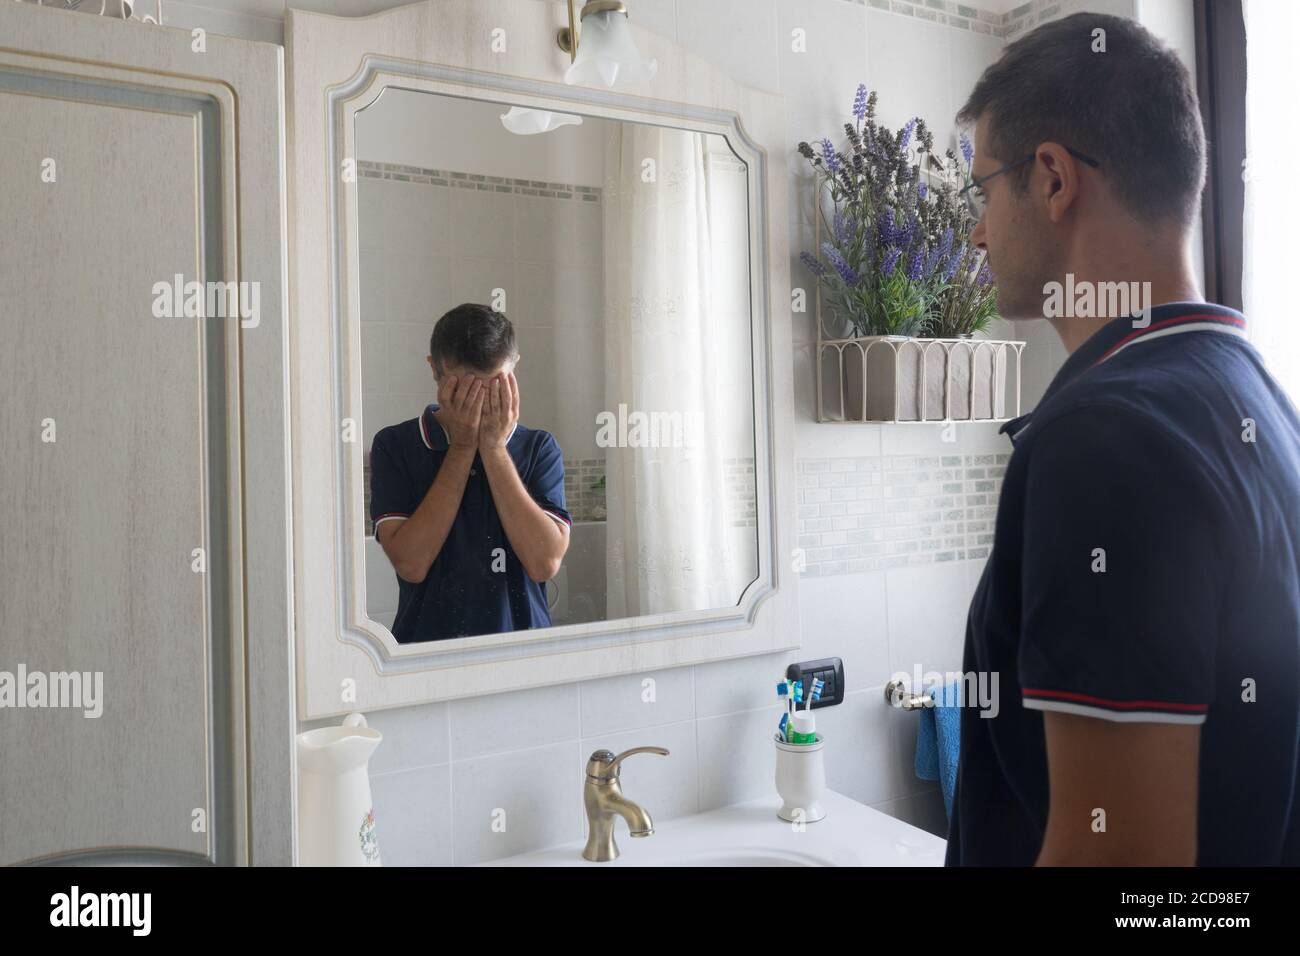 Il giovane uomo in piedi davanti allo specchio si vede in una riflessione disperata con le mani in faccia. Concetto di depressione o malattia mentale. Foto Stock